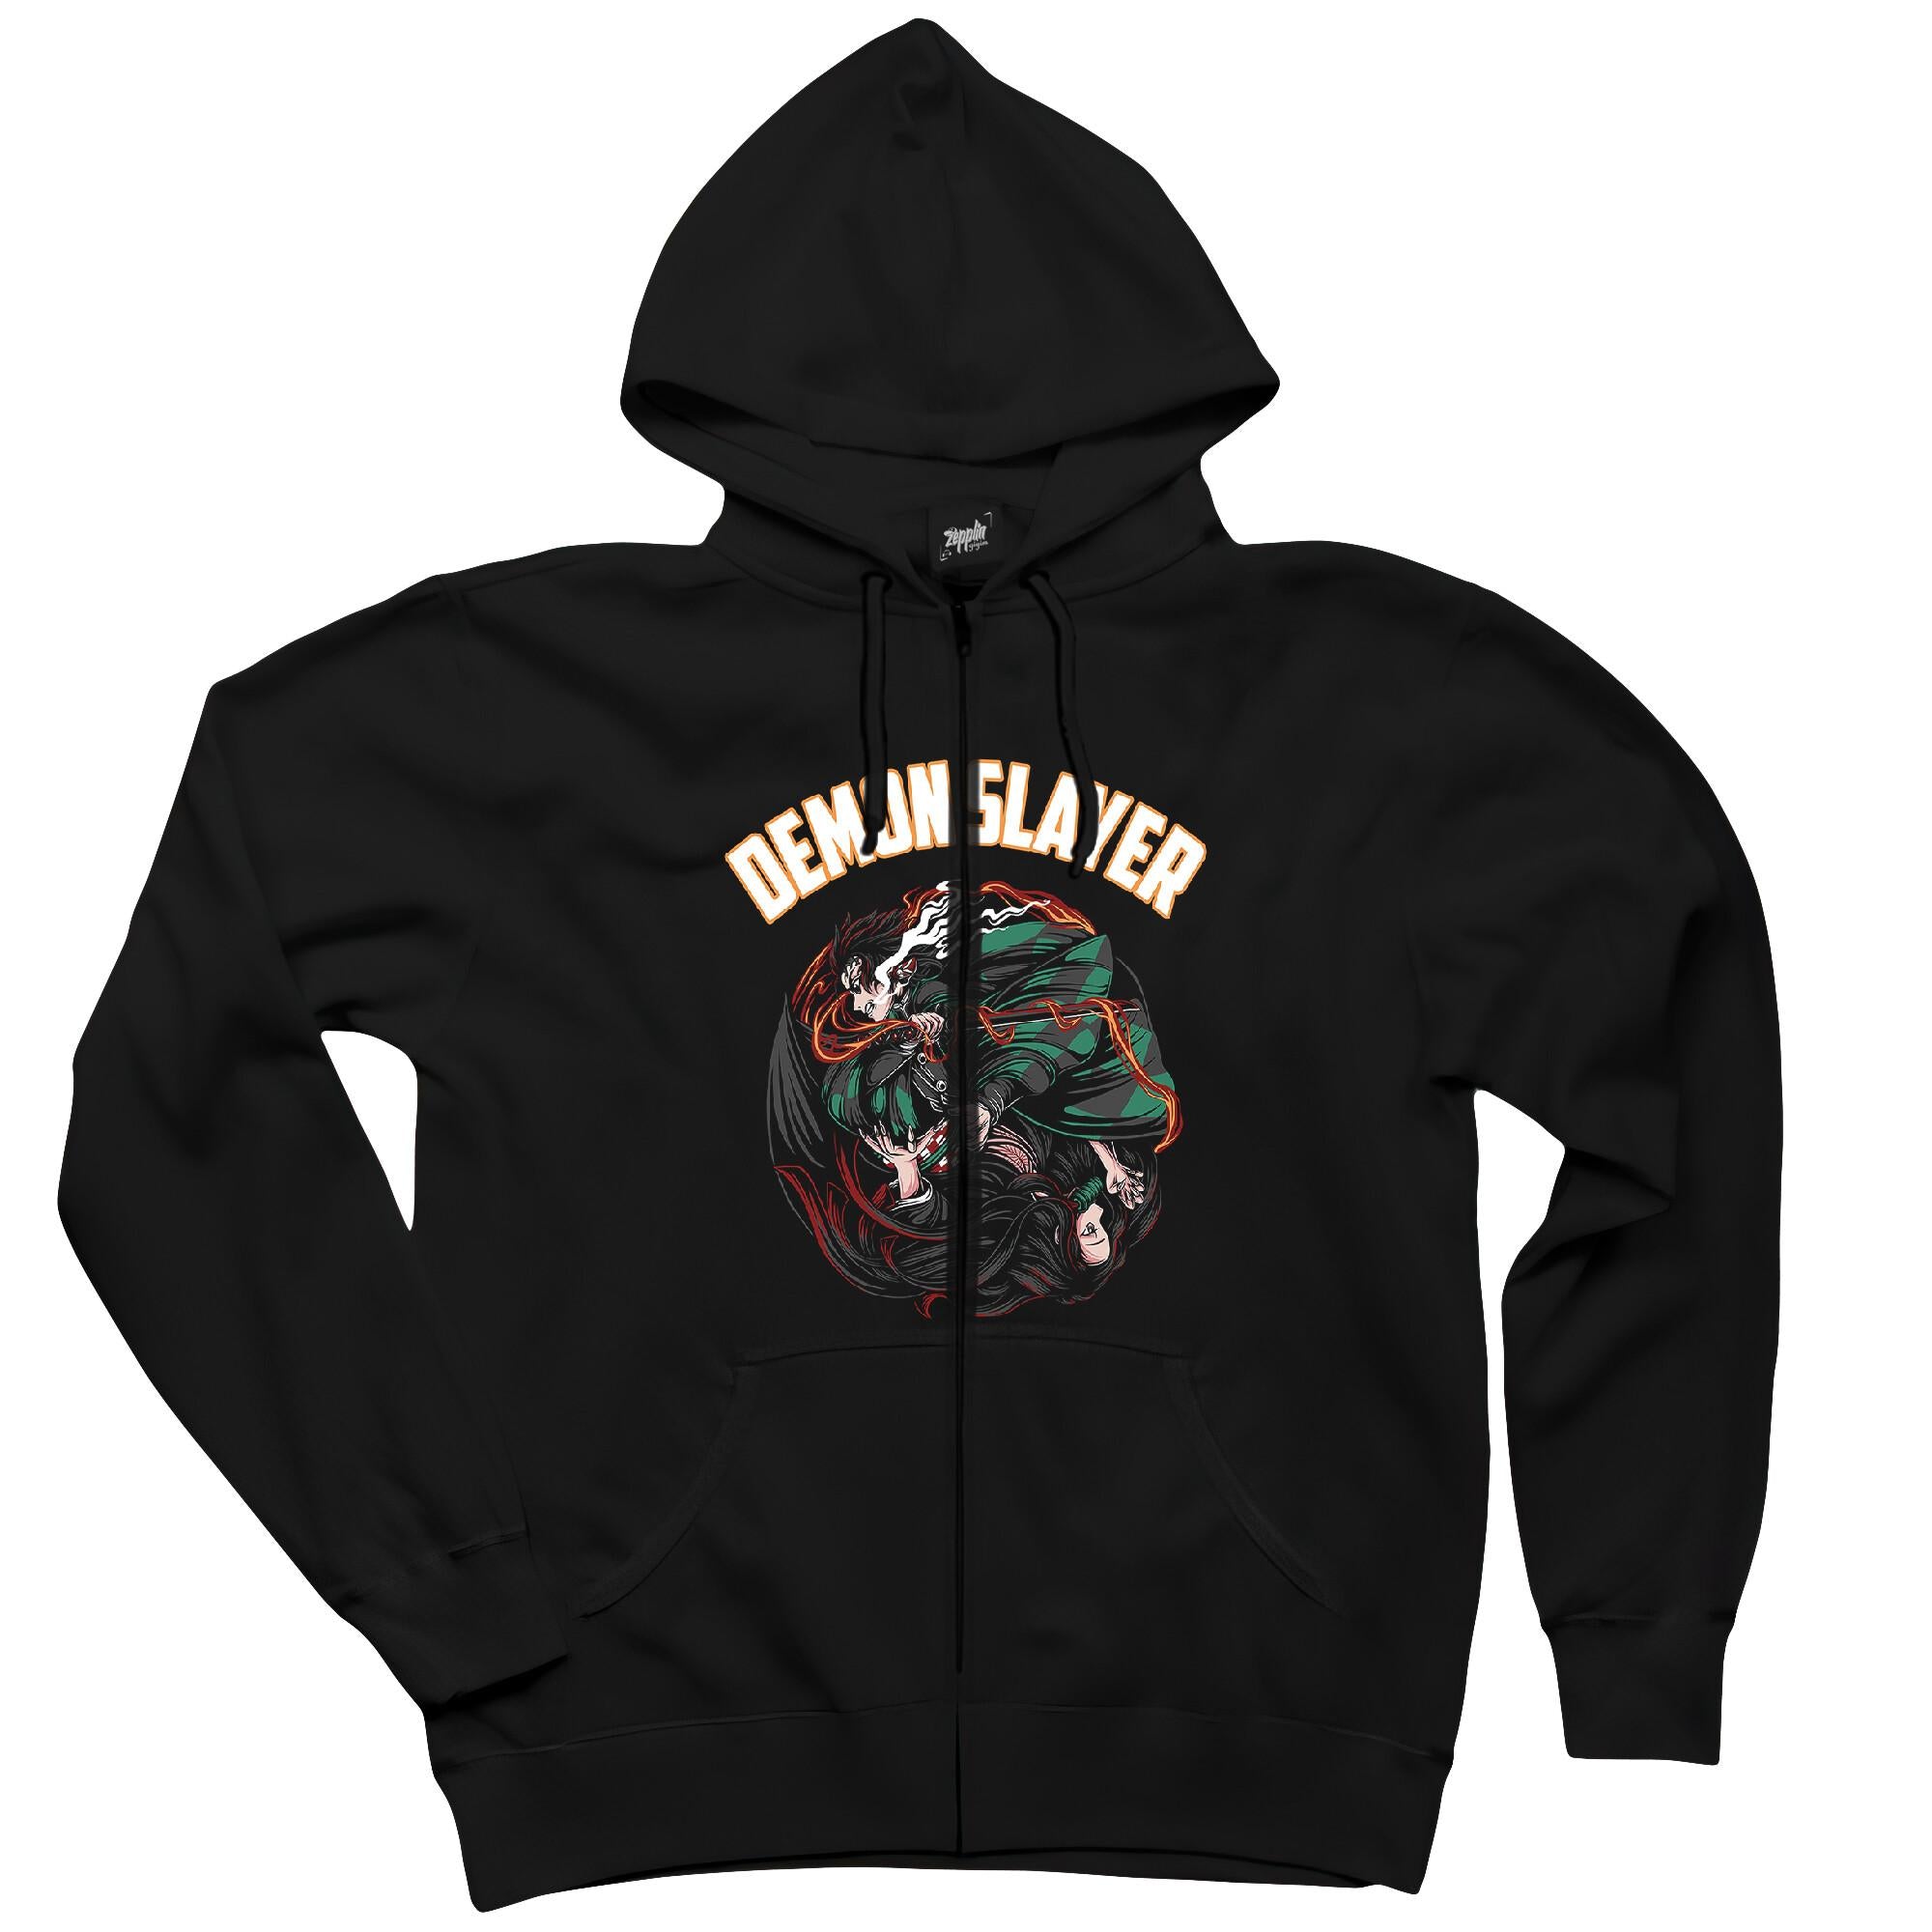 Demon Slayer Siyah Fermuarlı Kapşonlu Sweatshirt